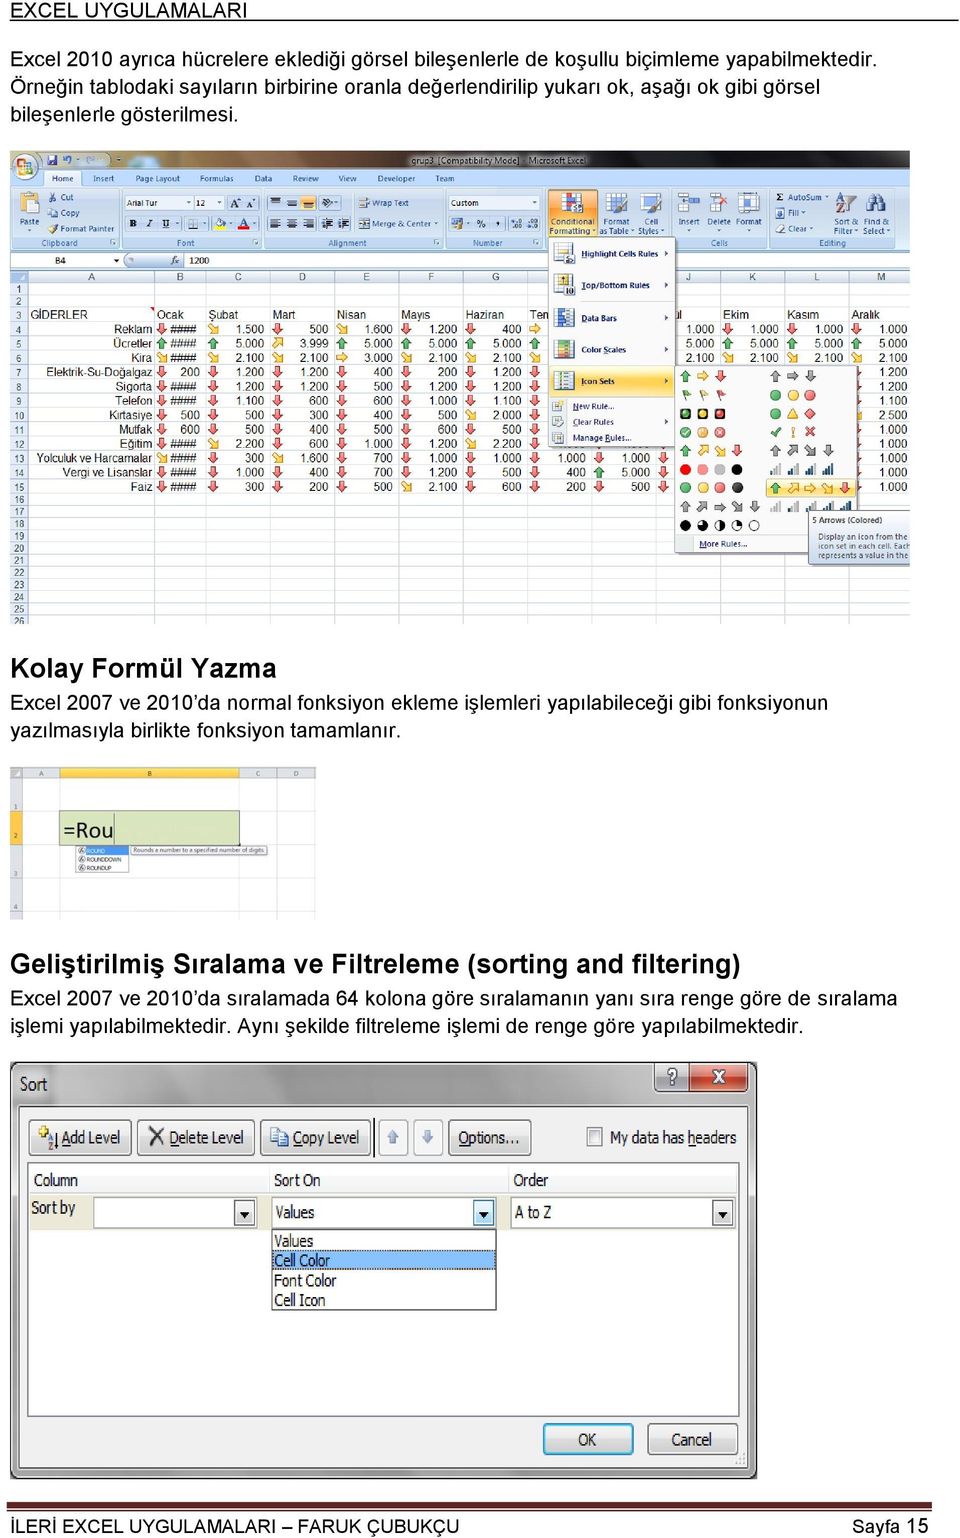 Kolay Formül Yazma Excel 2007 ve 2010 da normal fonksiyon ekleme iģlemleri yapılabileceği gibi fonksiyonun yazılmasıyla birlikte fonksiyon tamamlanır.